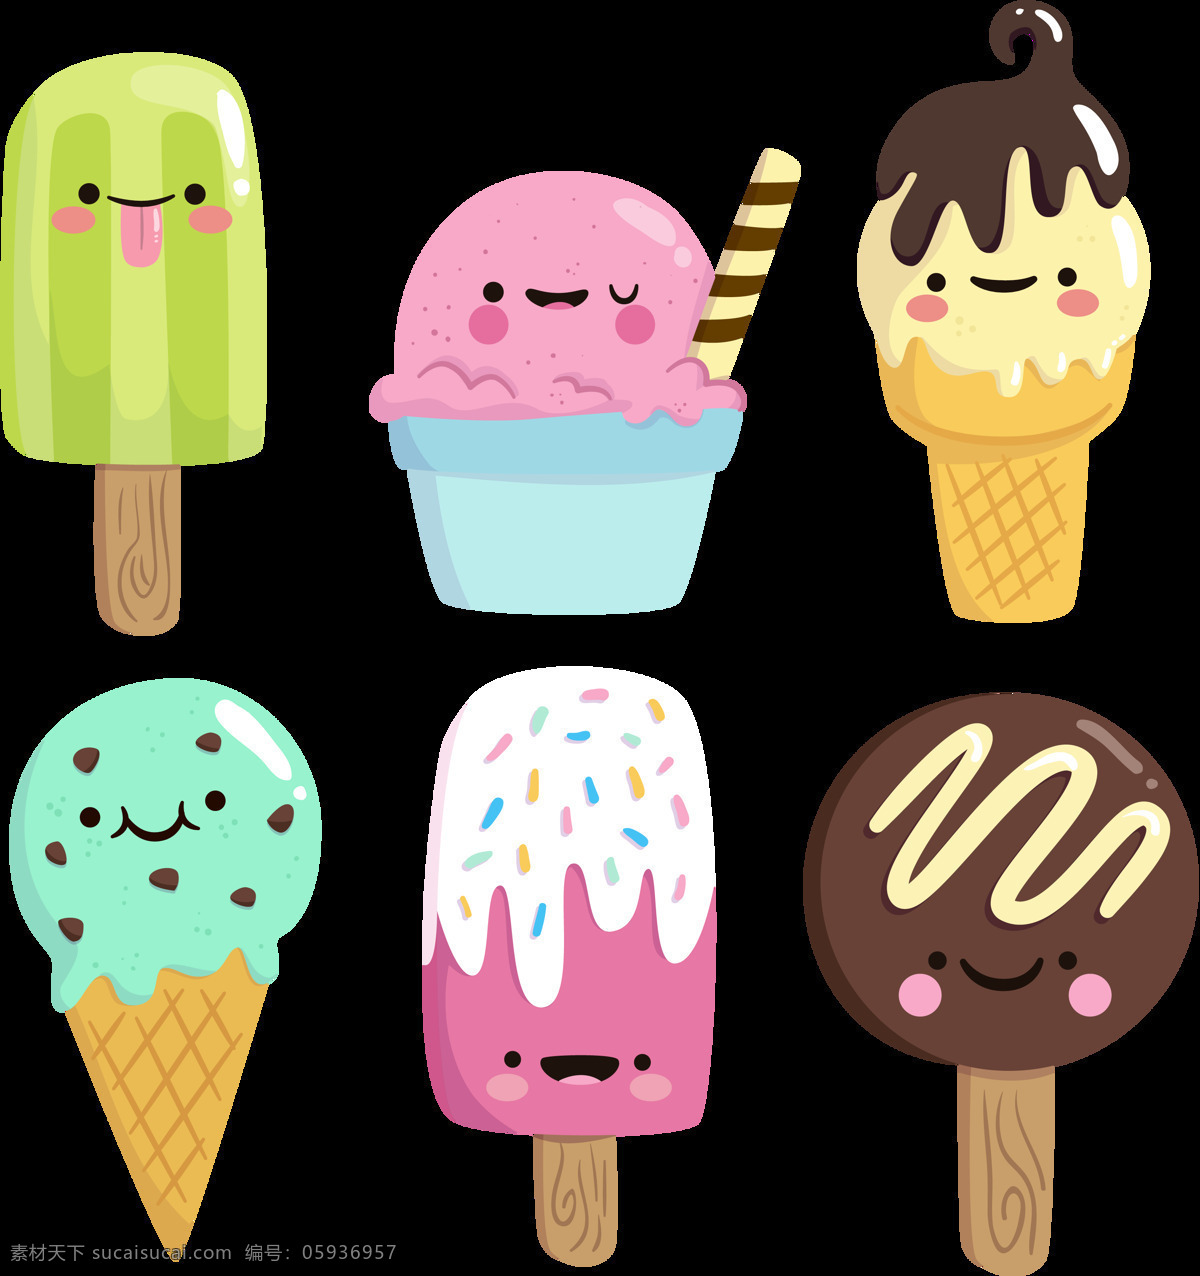 彩色 可爱 冰淇淋 免 抠 透明 图 层 甜品图标 冷饮插图 清凉甜品 冰淇淋标志 雪糕图标 冰激凌图标 冰激凌插图 卡通冰淇淋 手绘冰淇淋 雪糕图案 冰淇淋促销 冰淇淋素材